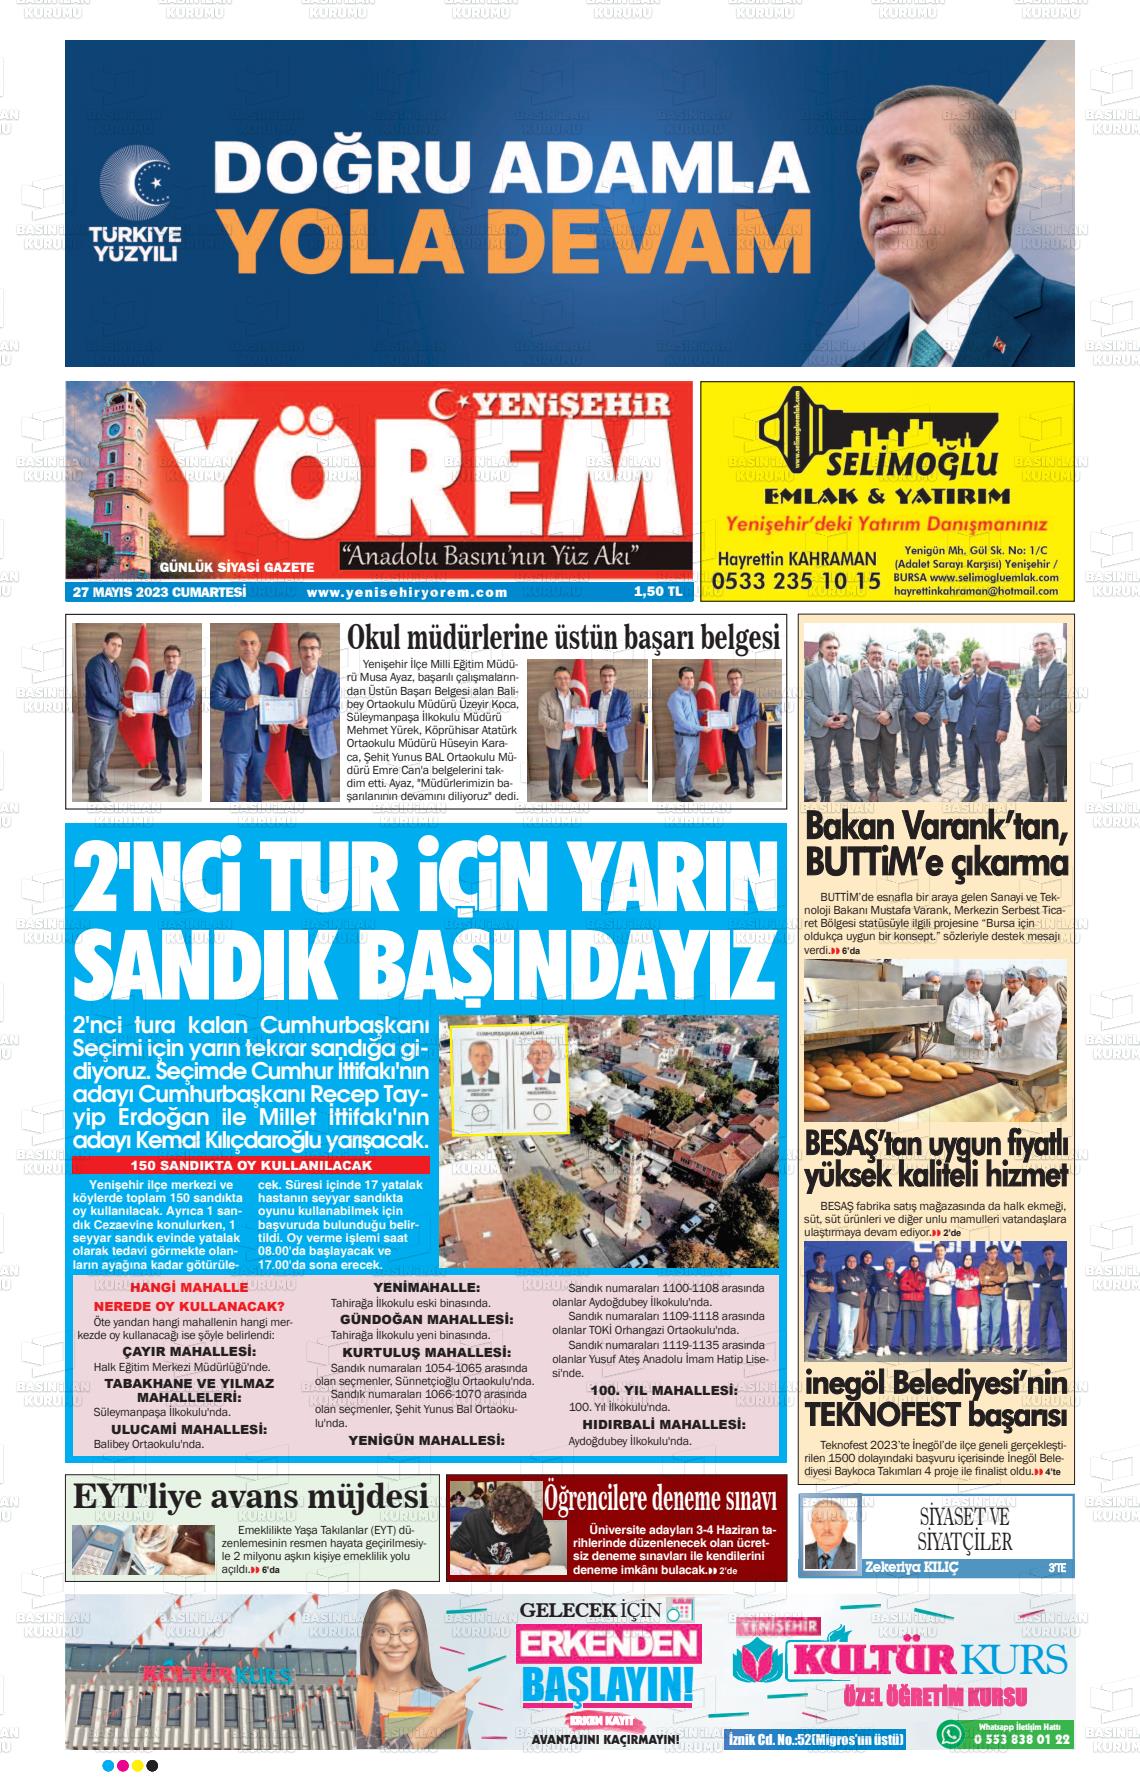 27 Mayıs 2023 Yenişehir Yörem Gazete Manşeti